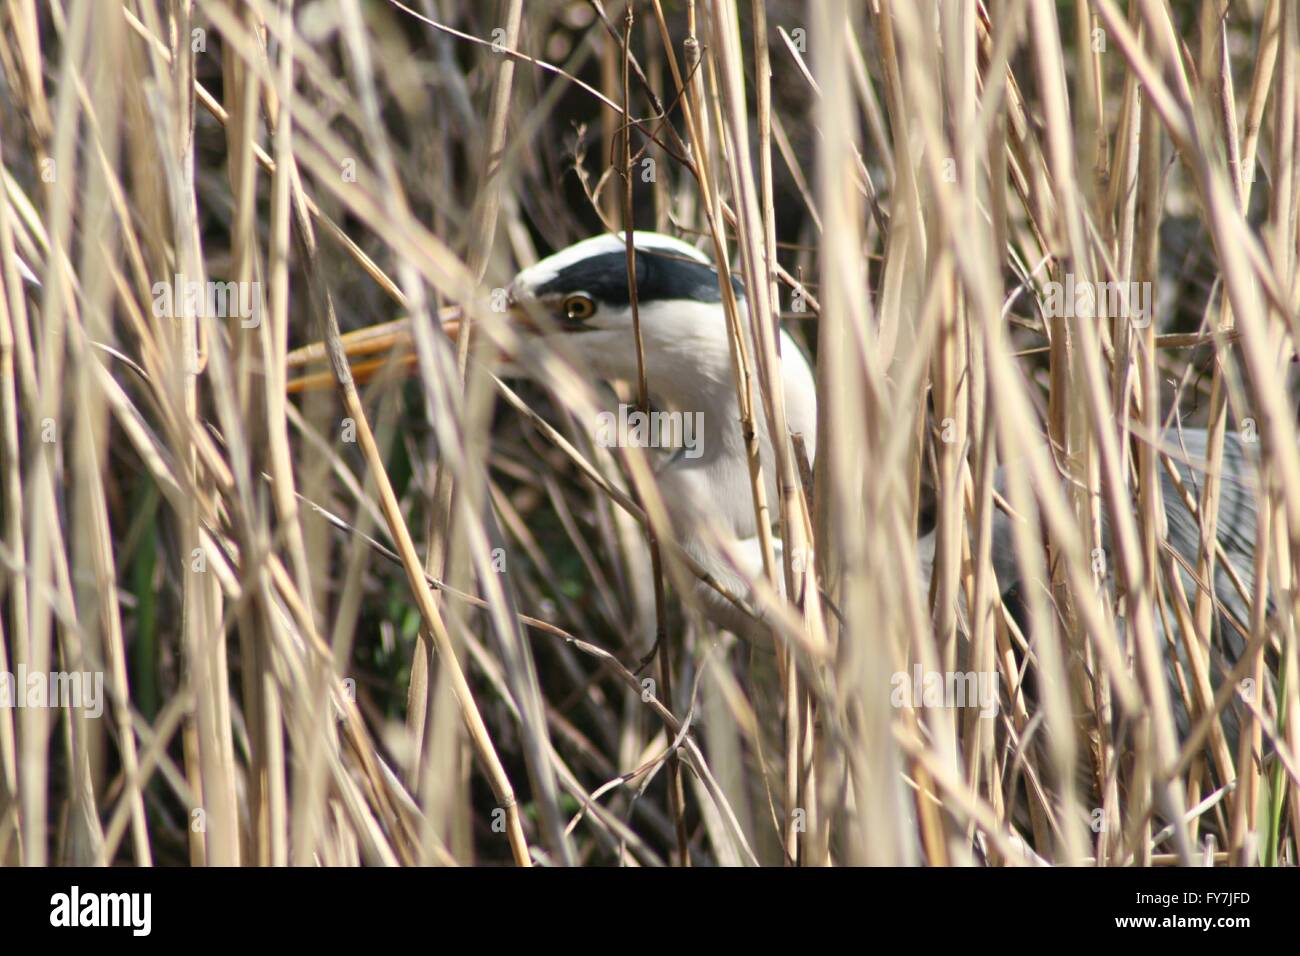 I spy a heron Stock Photo